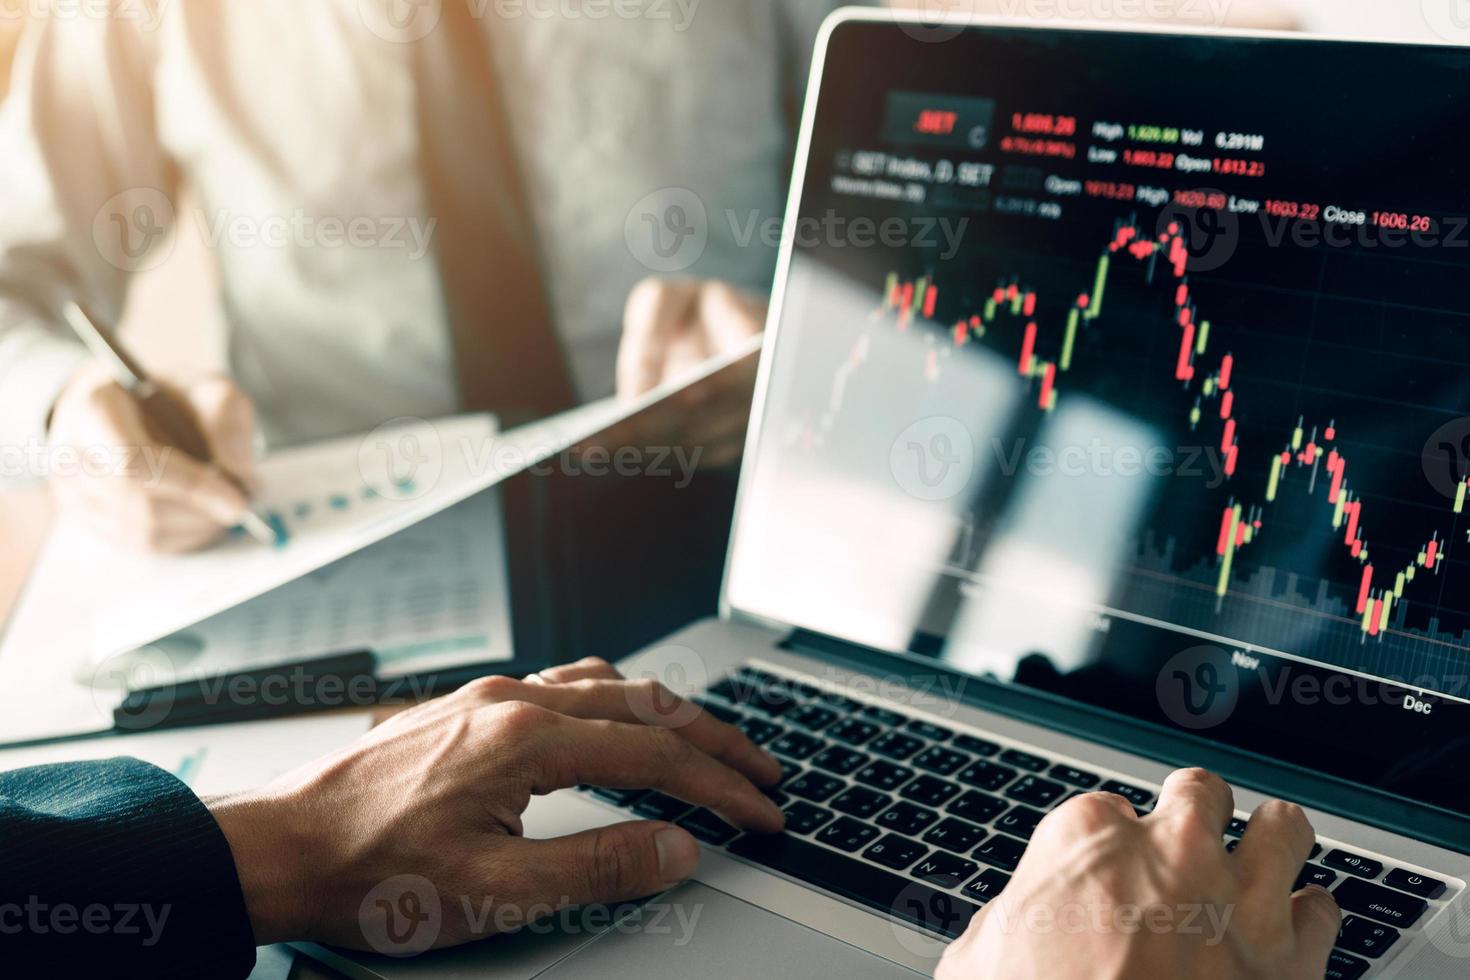 investeerders gebruiken laptops om de aandelenmarkt van investeringswebsites te betreden en partners maken aantekeningen en analyseren prestatiegegevens. foto